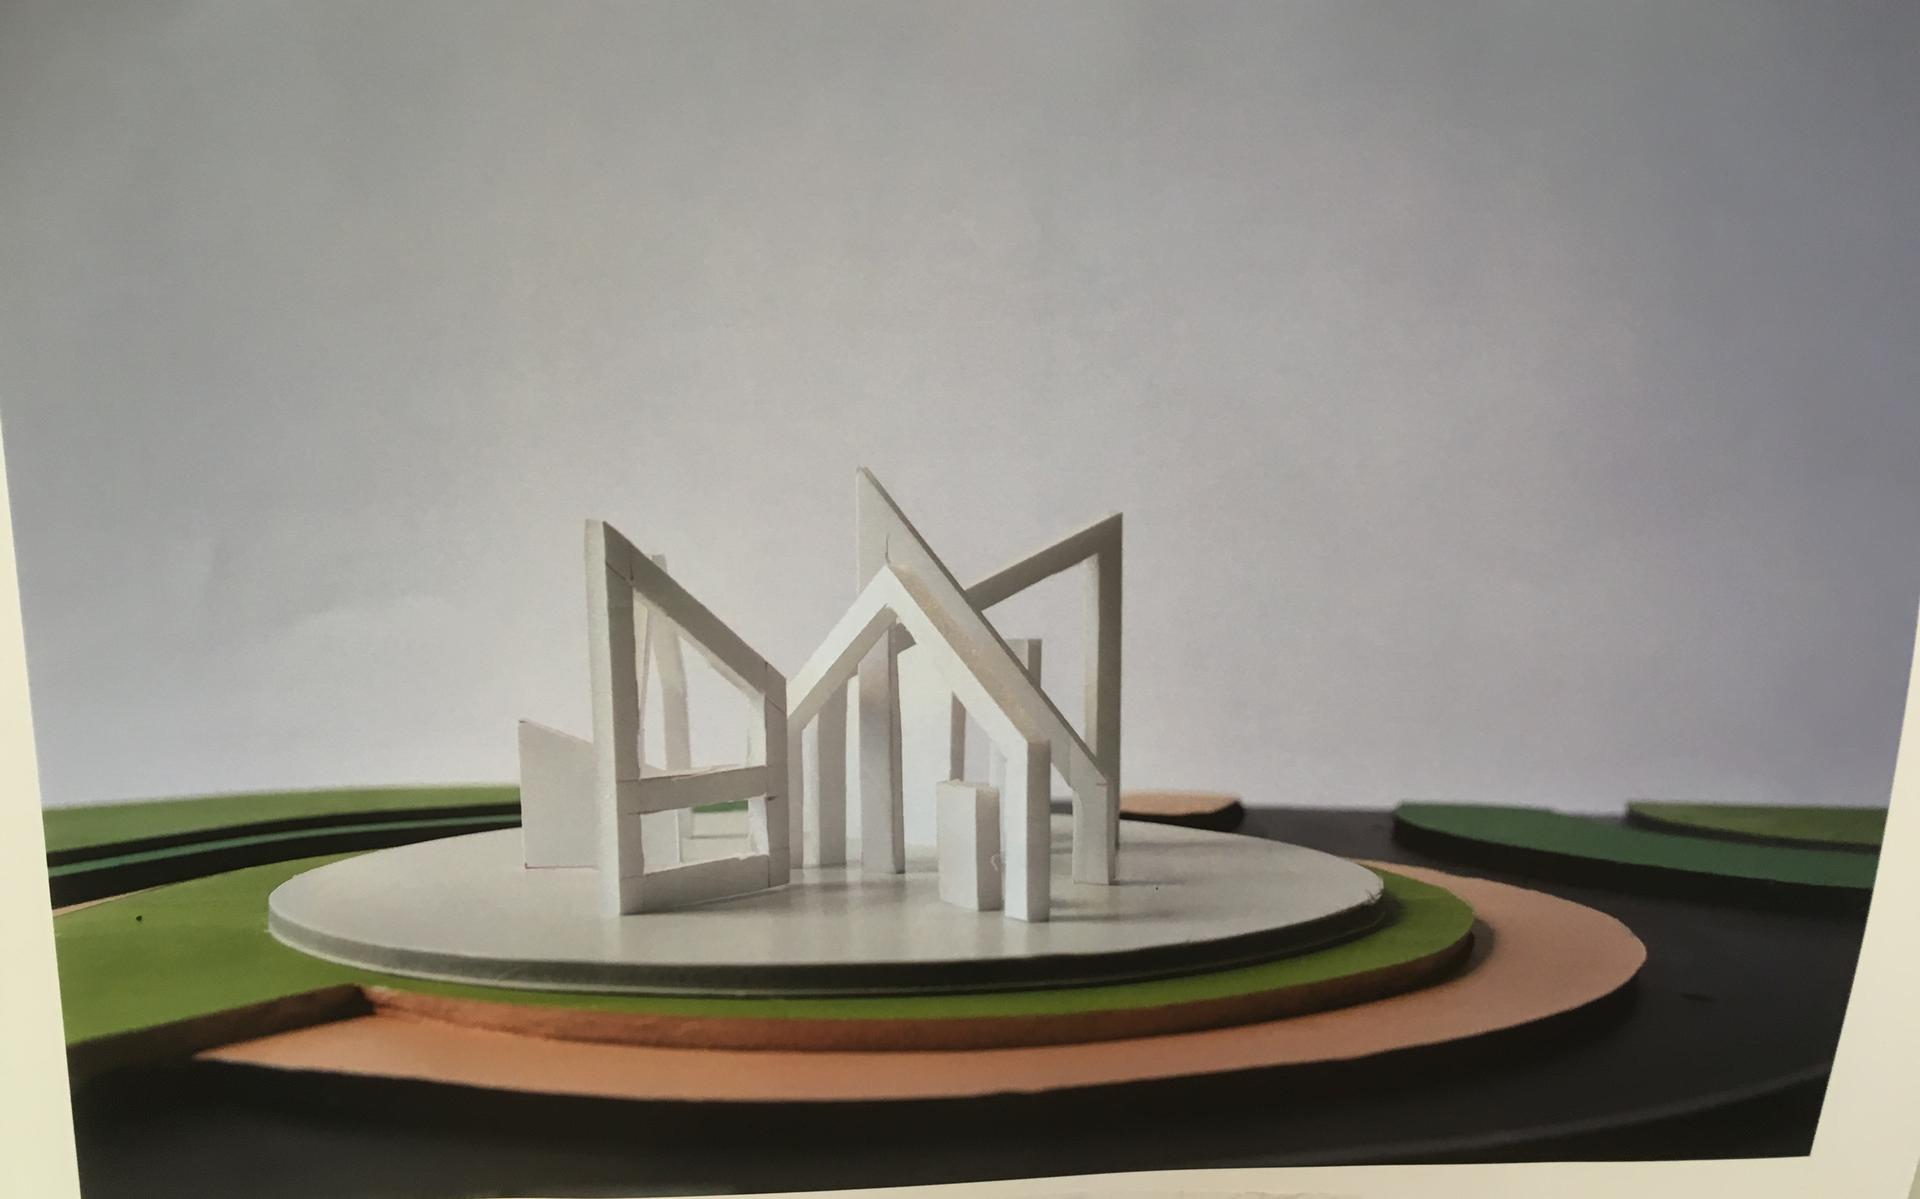 Het winnende ontwerp van Dick Lubbersen en Ellen Kroeze, die samenwerken in het Emmer atelier Helderrood.